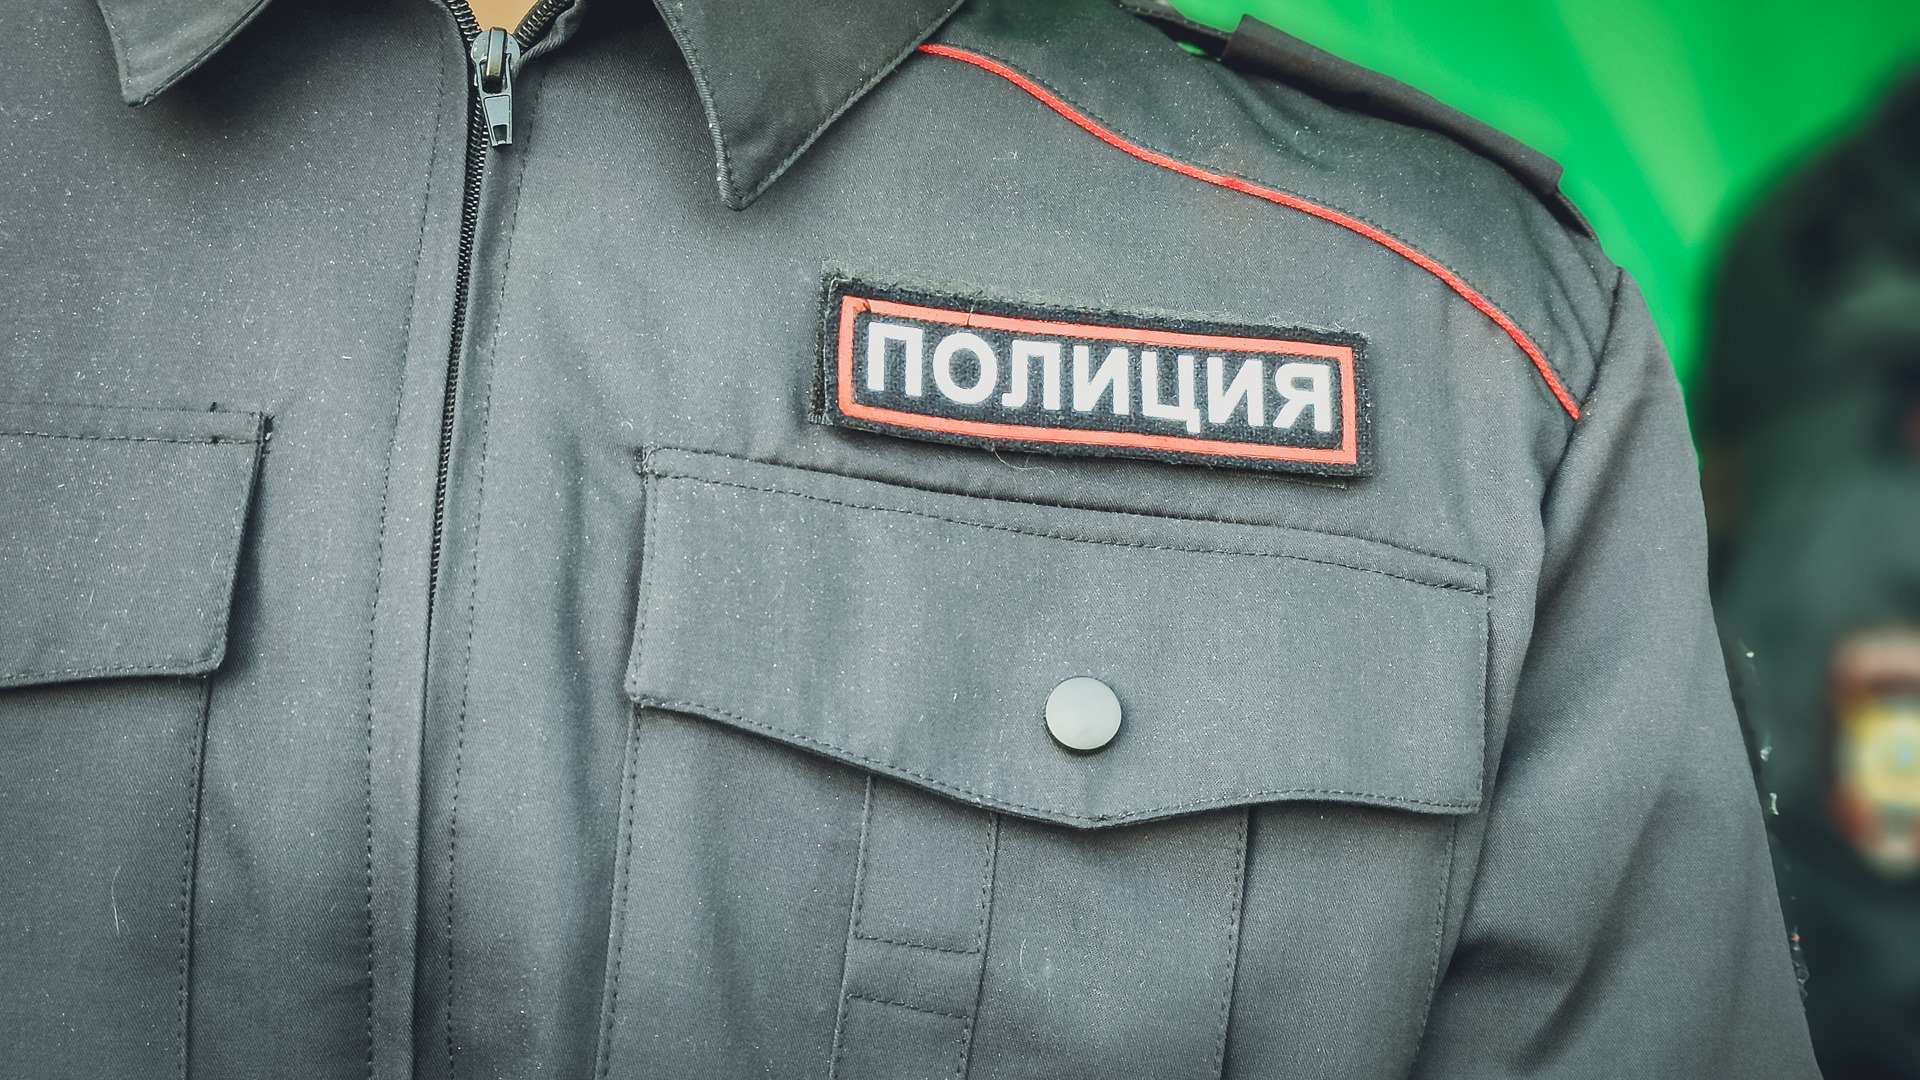 Житель Нижнего Тагила получил штраф в 15 тысяч рублей за нападение на полицейского